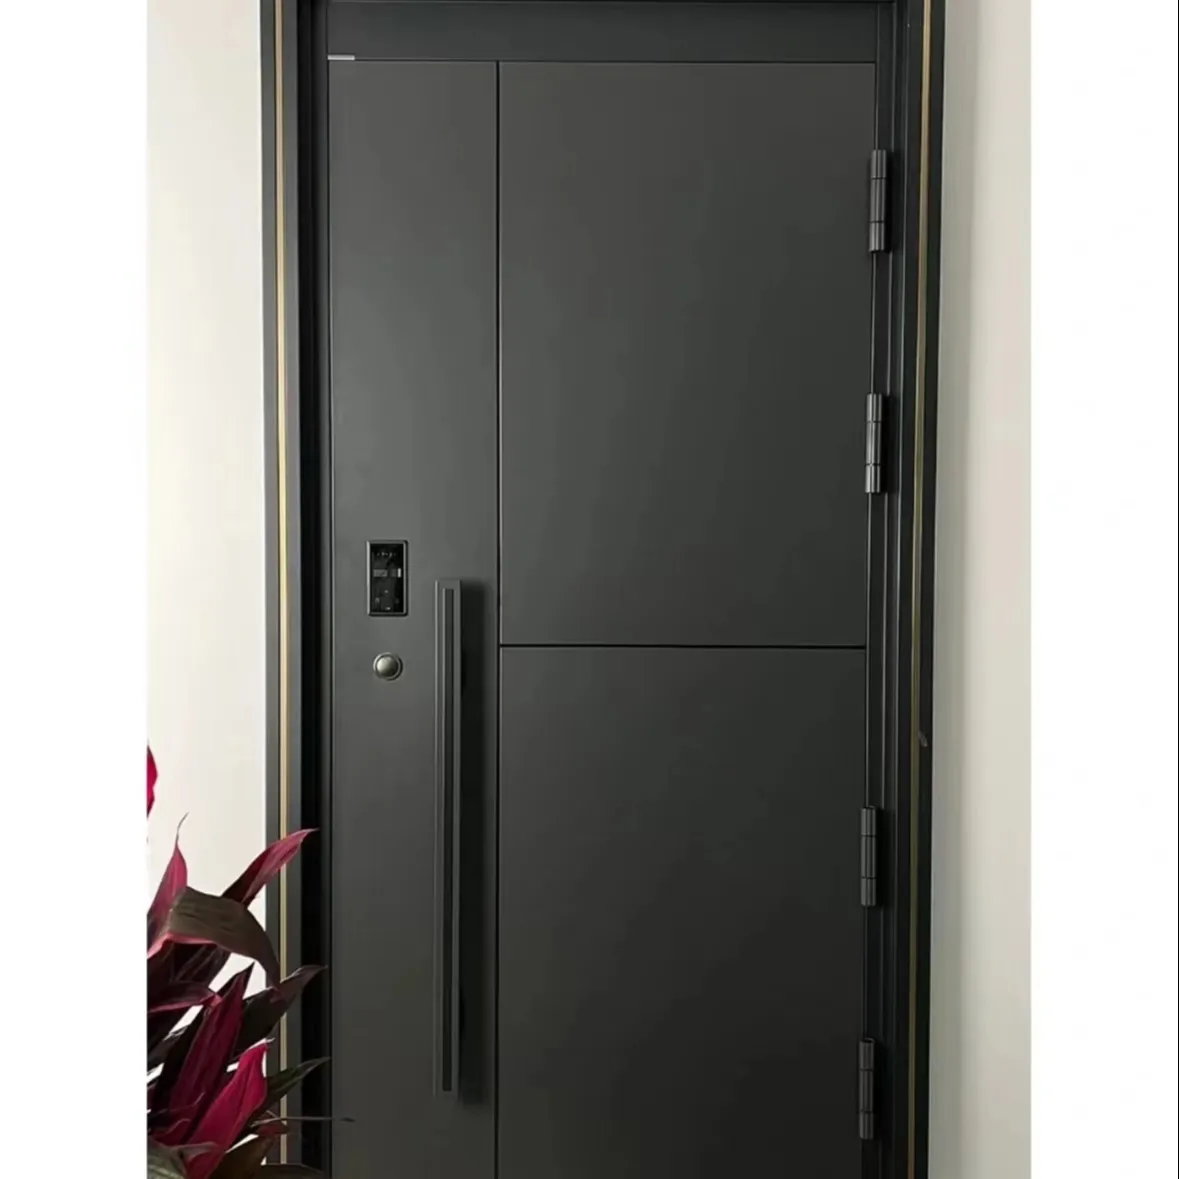 Modern Exterior Main Gate Door Designs Front Iron Entry Doors Entrance Security Steel Door For House